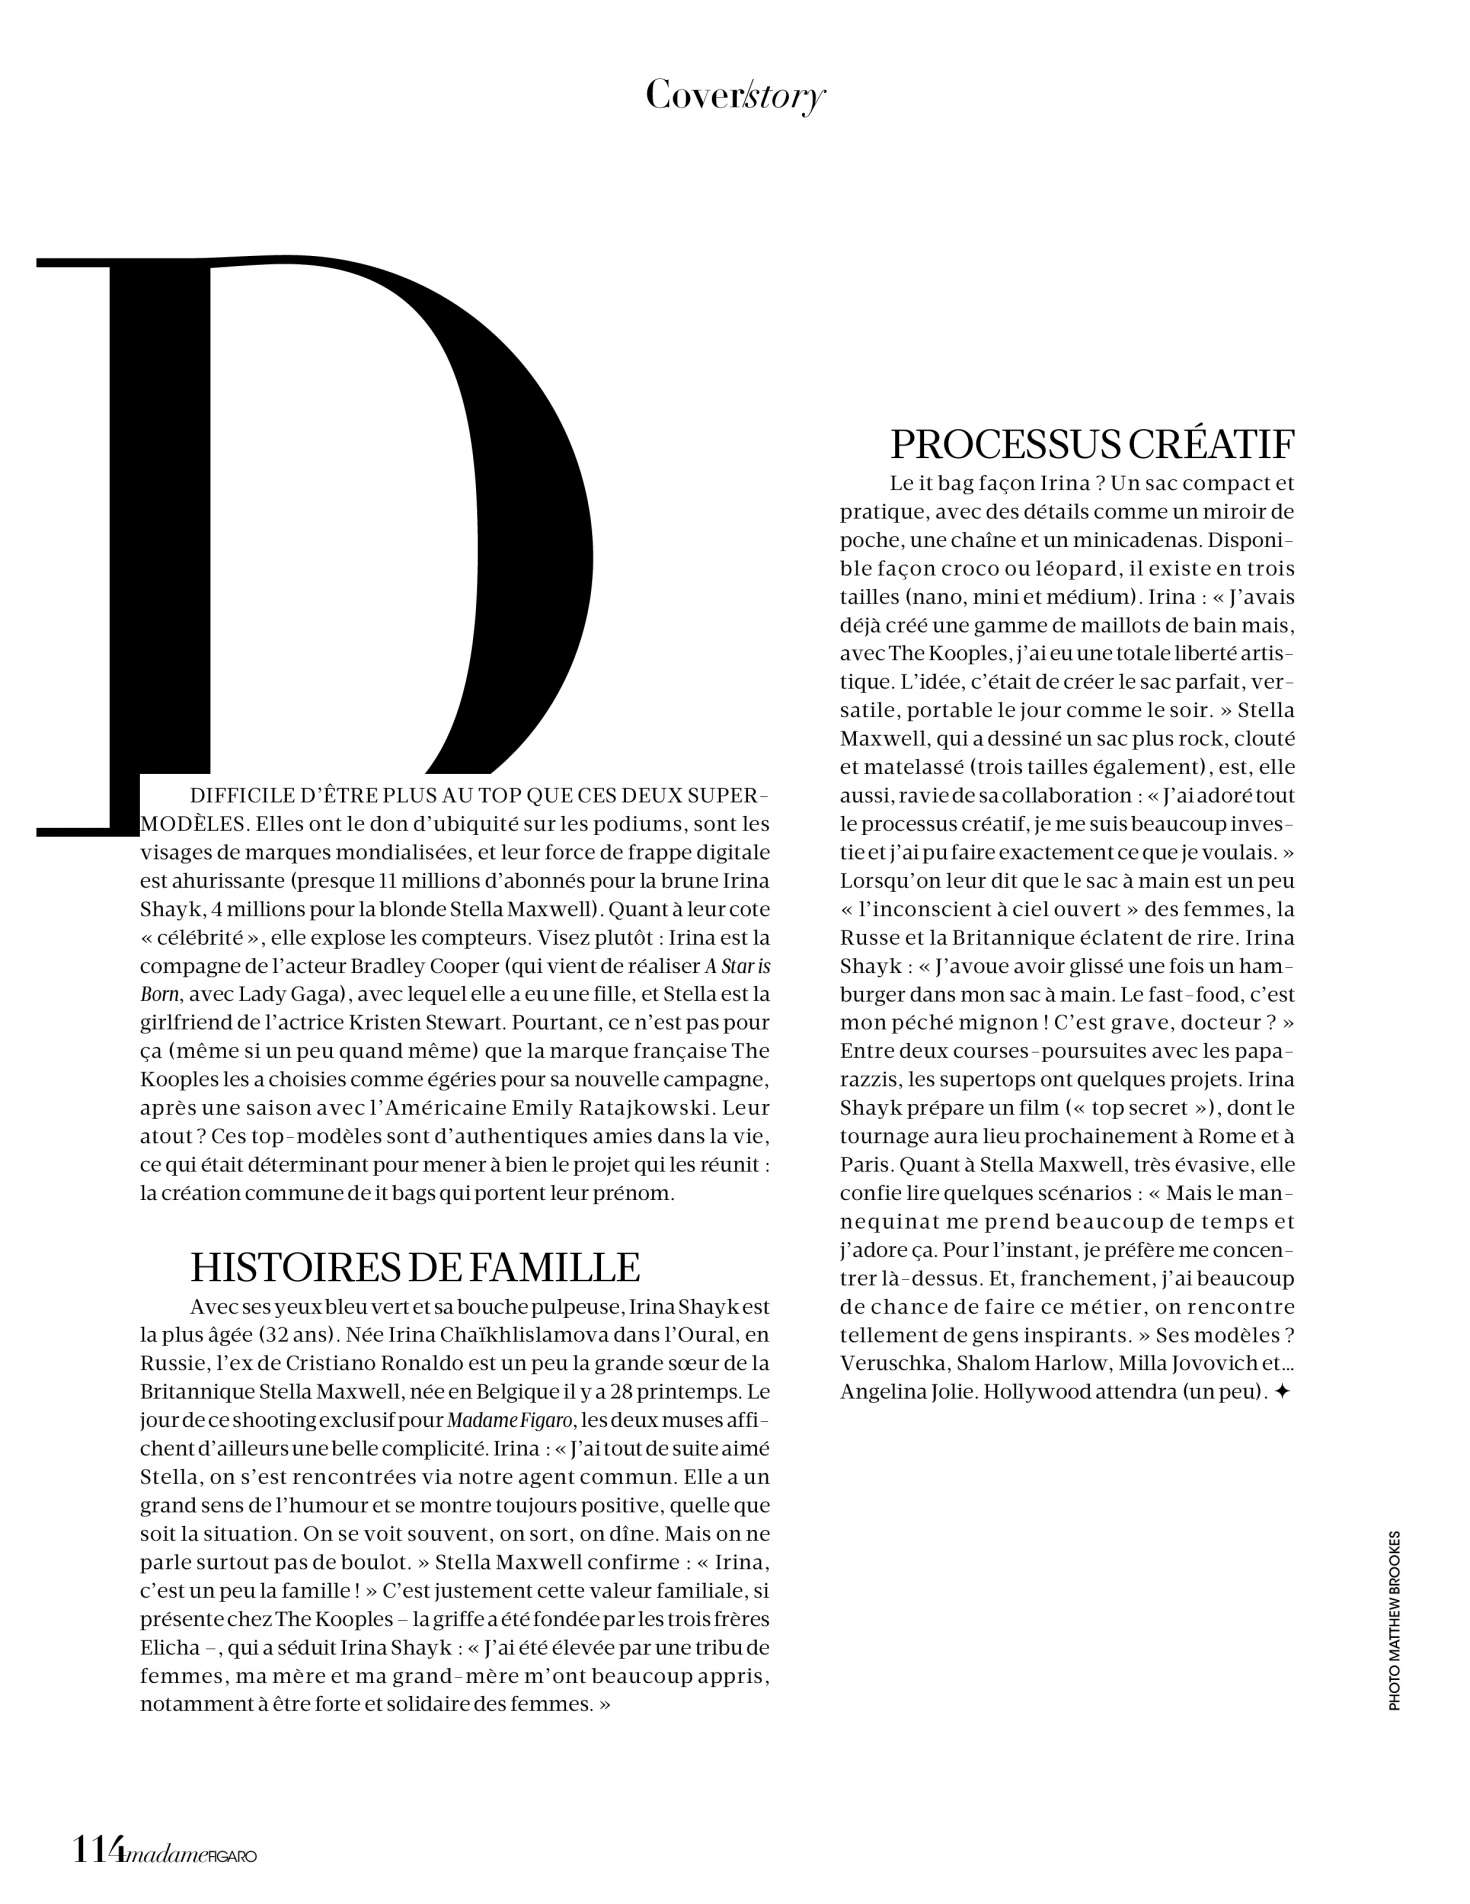 Stella Maxwell and Irina Shayk â€“ Madame Figaro Magazine (November 2018)